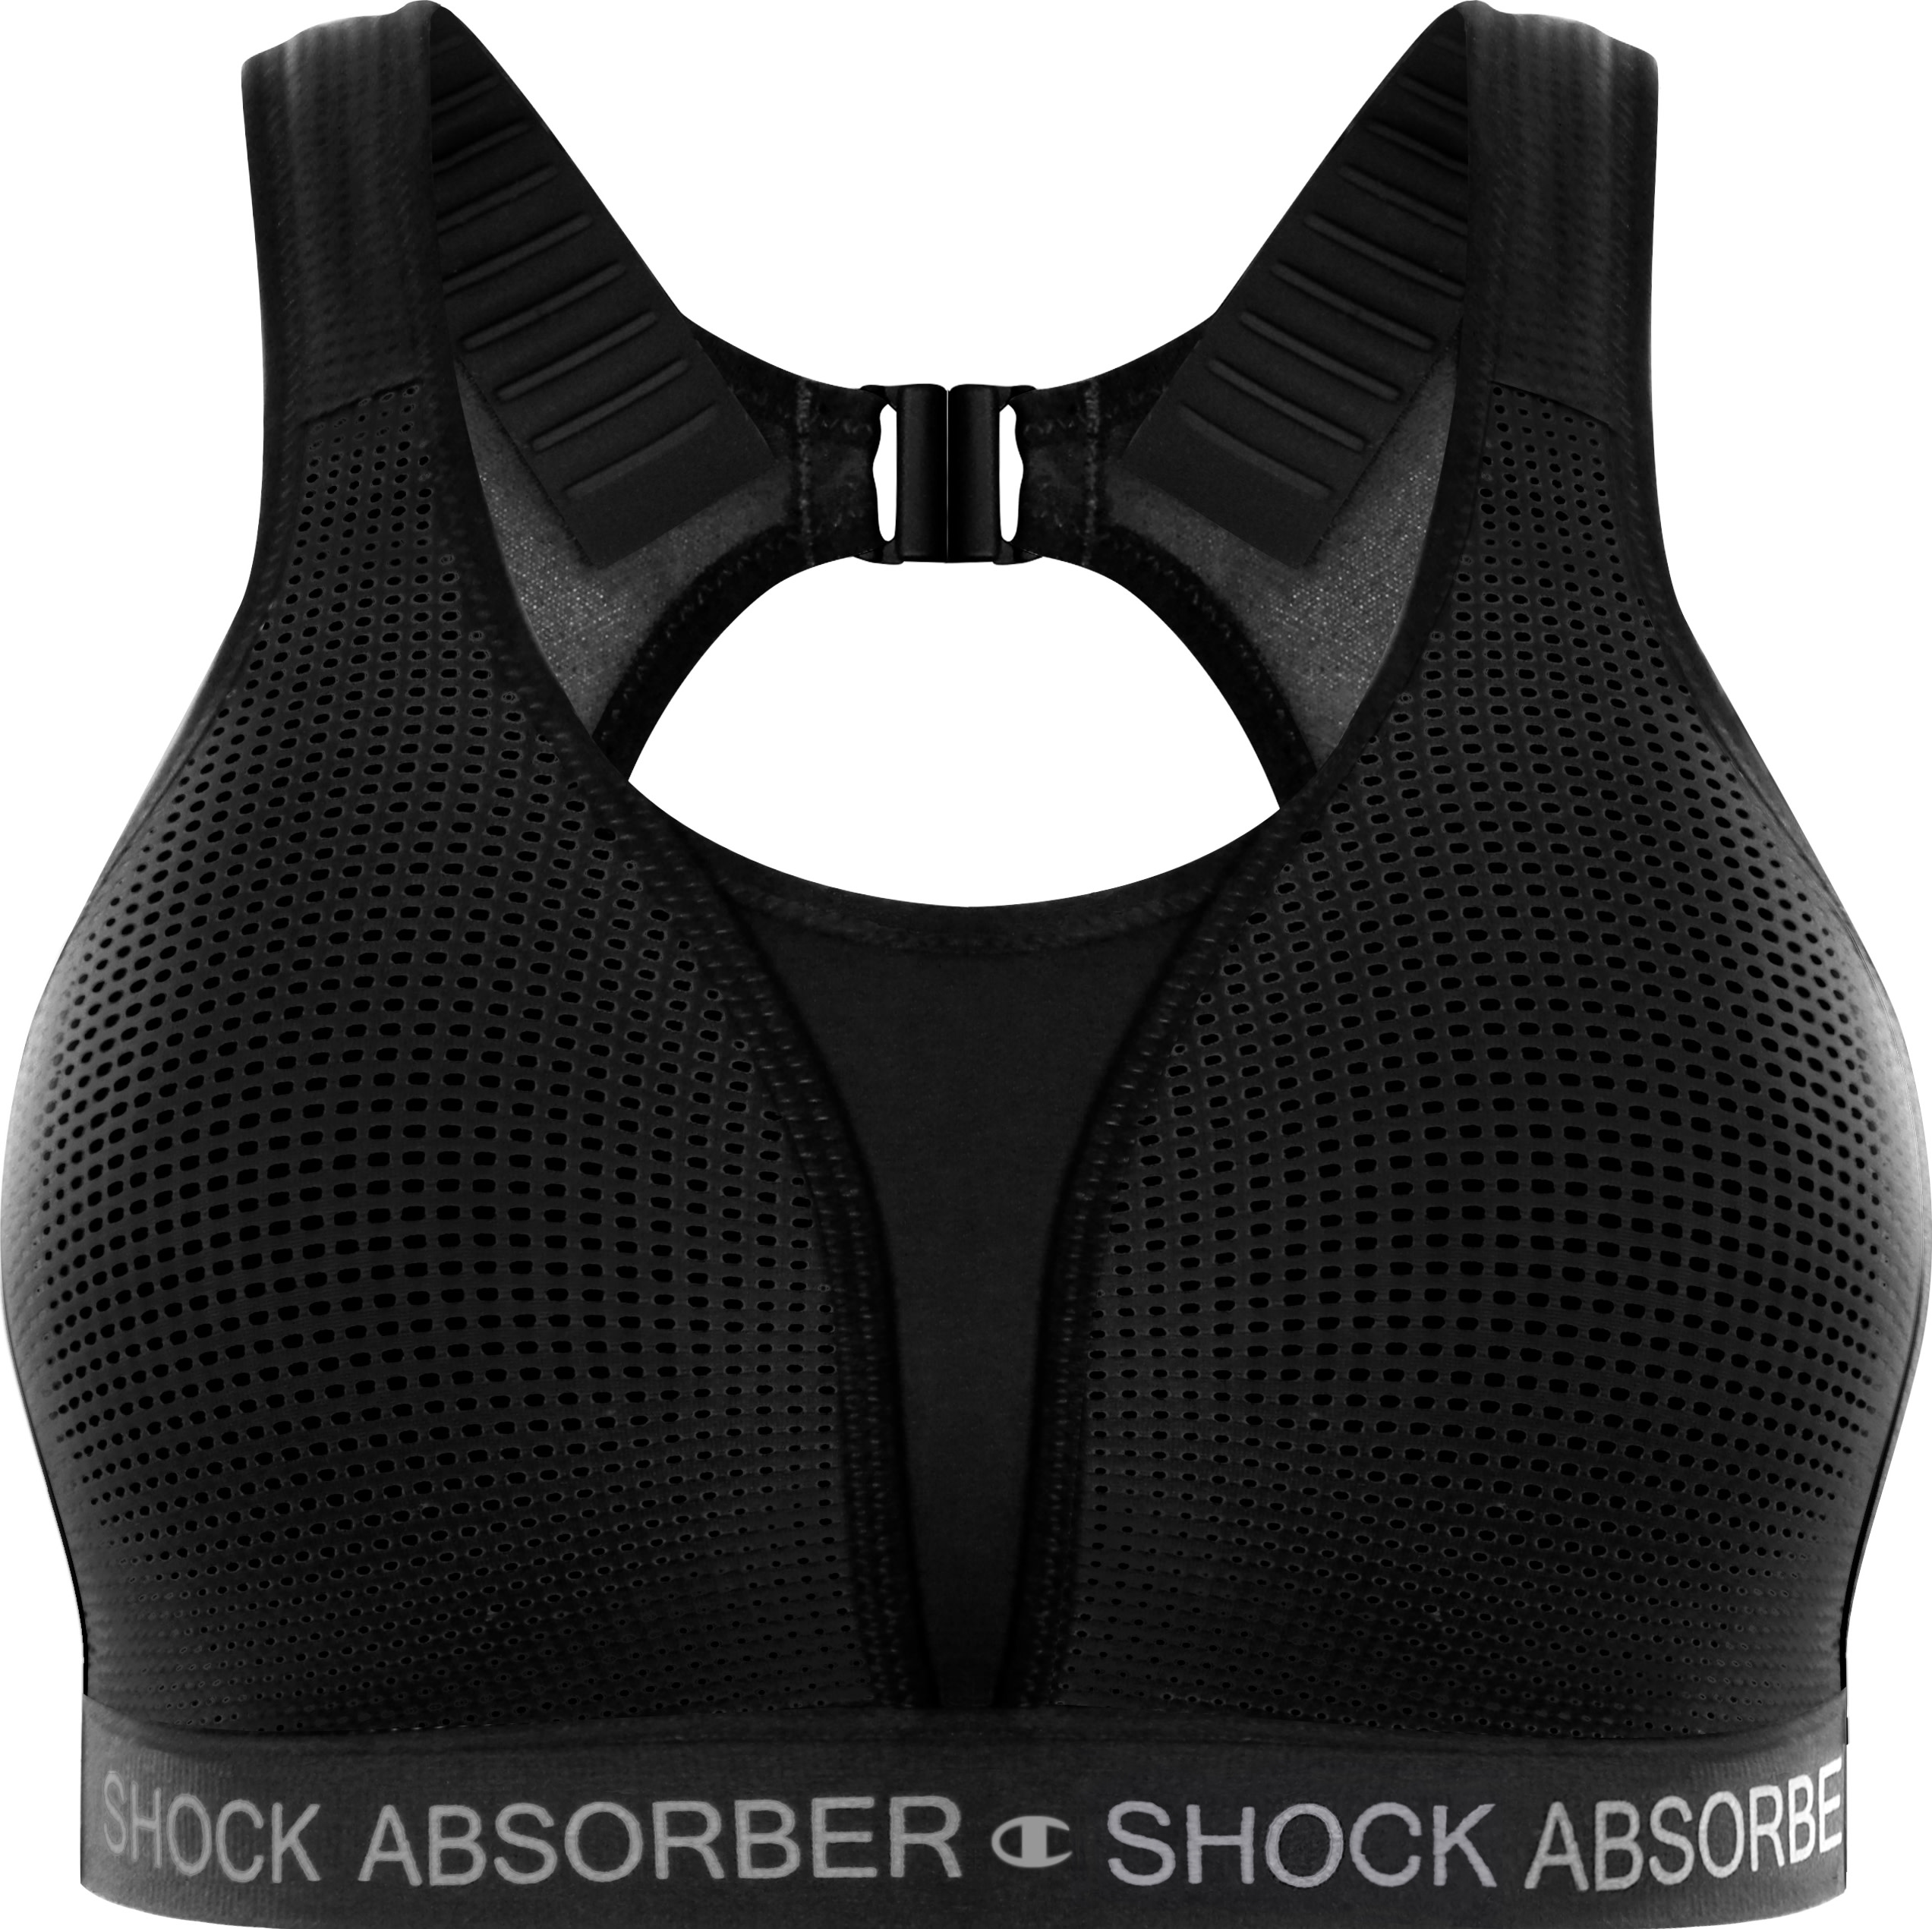 Ultimate run bra in black Shock Absorber